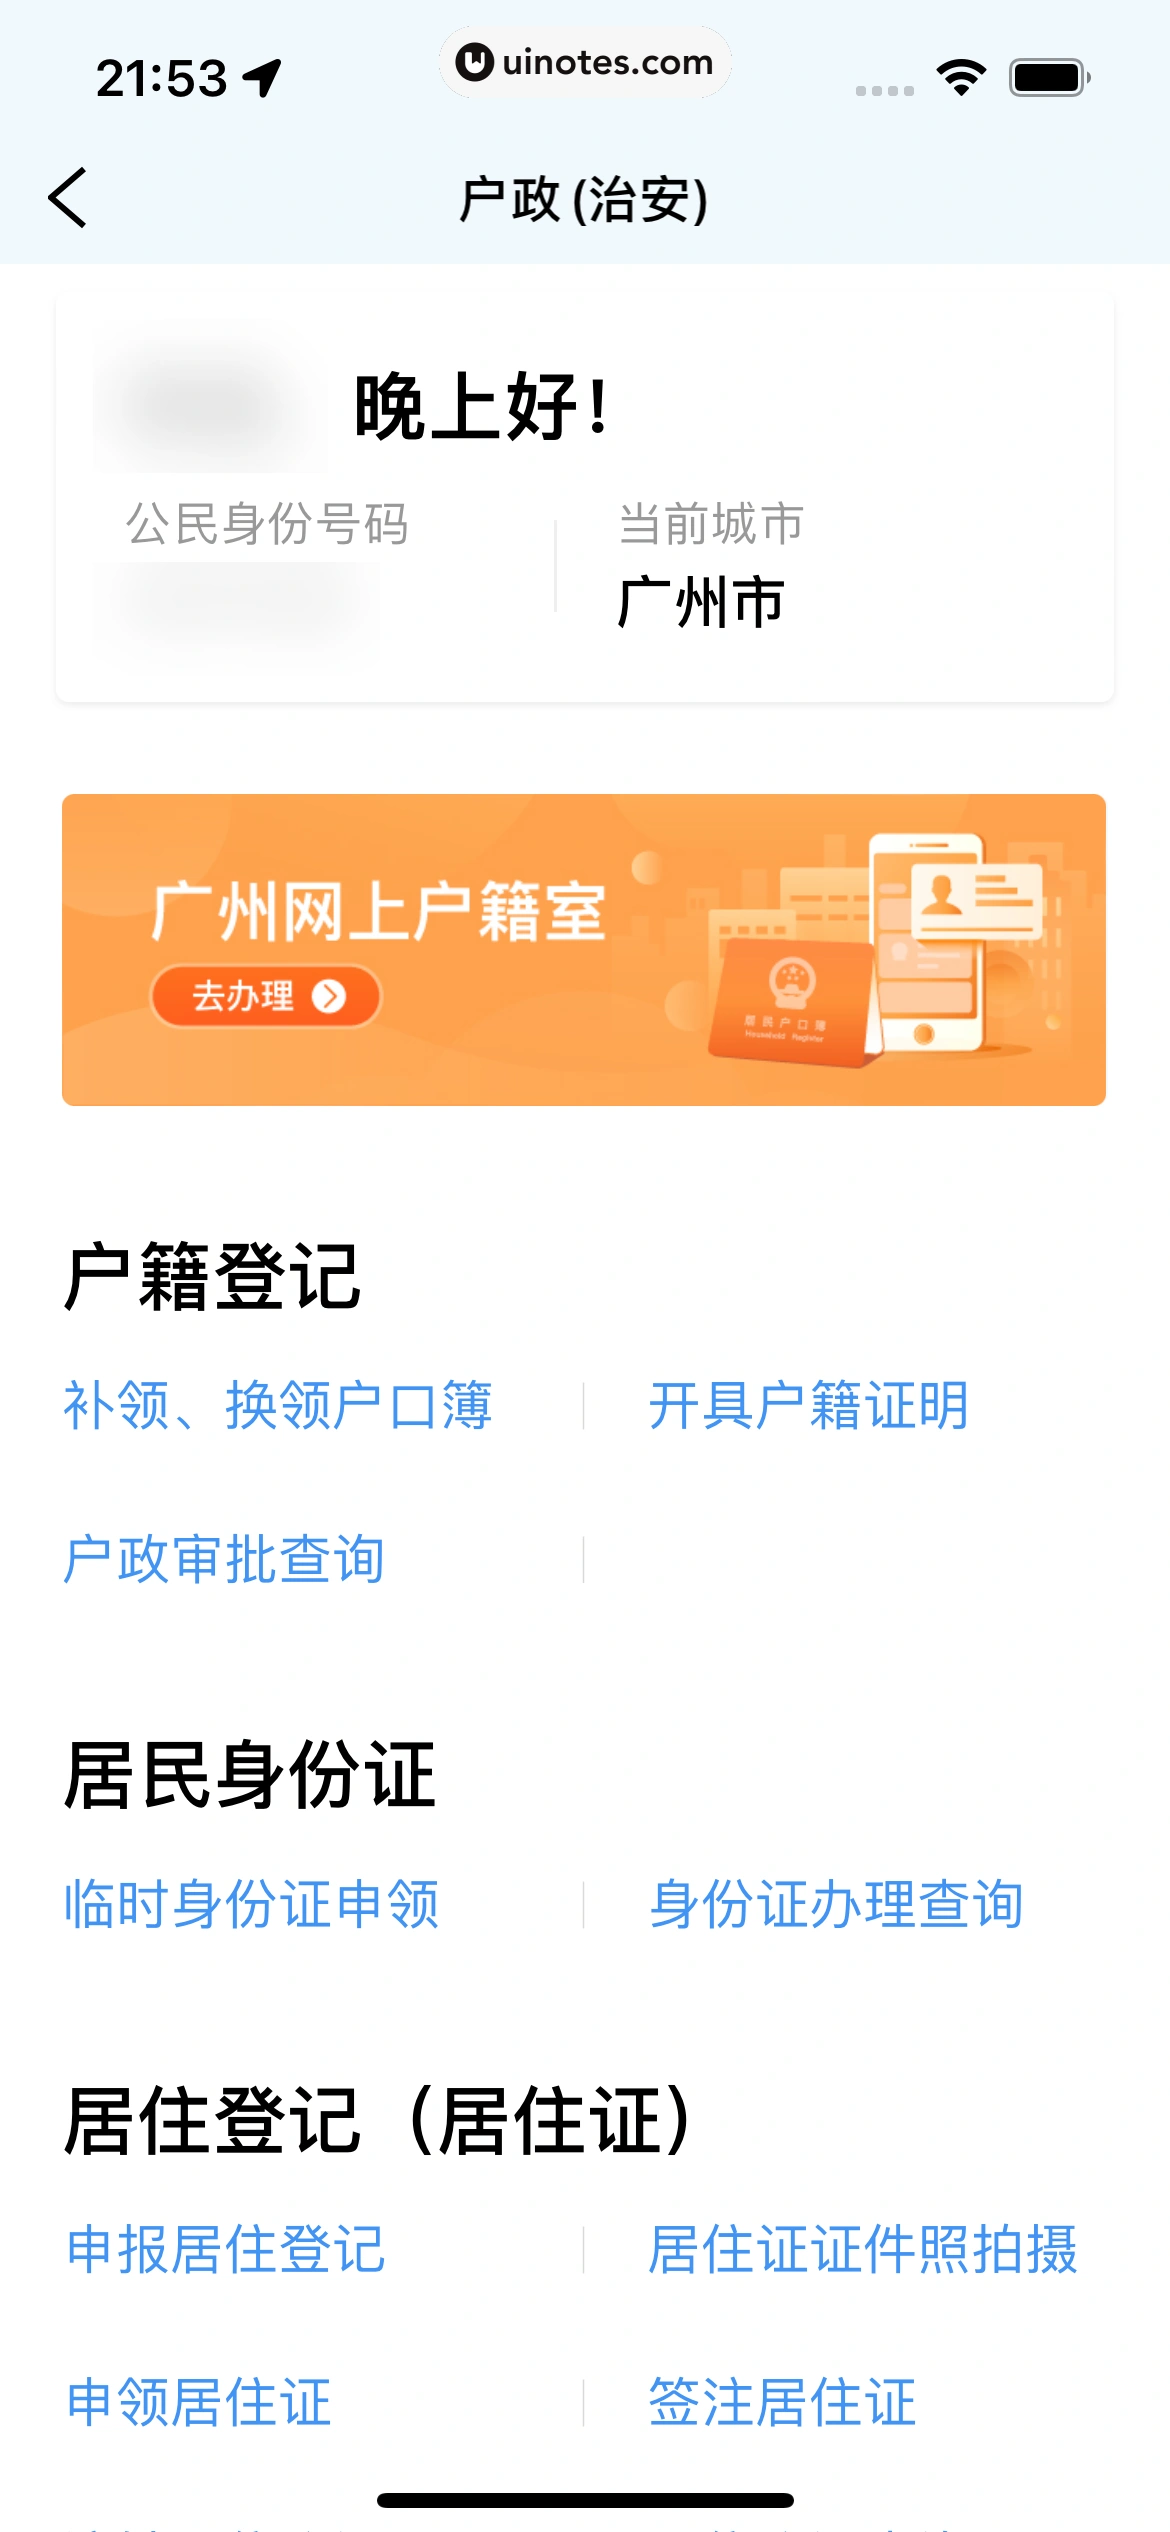 粤省事 App 截图 089 - UI Notes